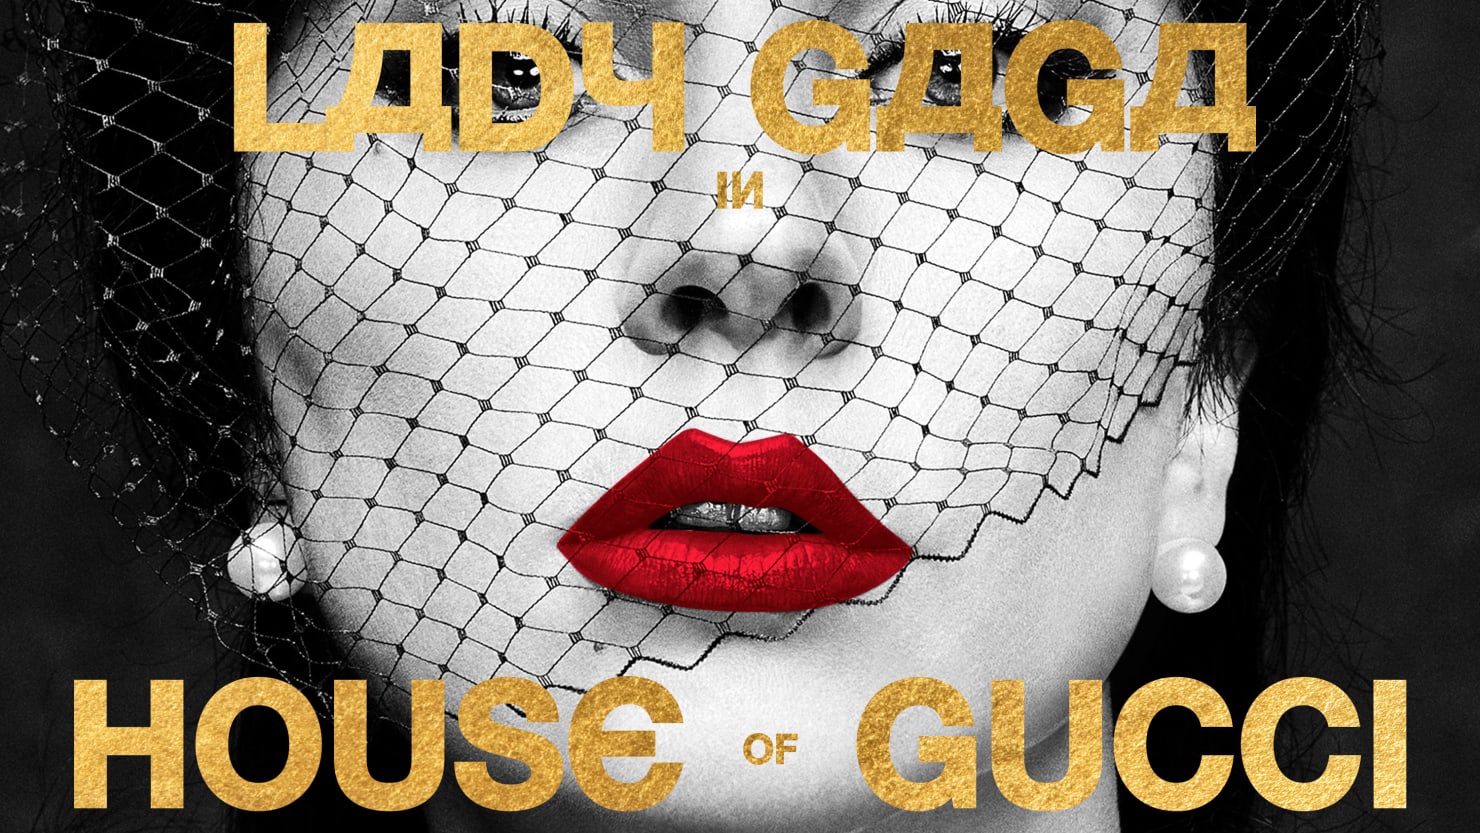 L’allenatore del dialogo “House of Gucci” ammette che l’accento di Lady Gaga è più russo che italiano